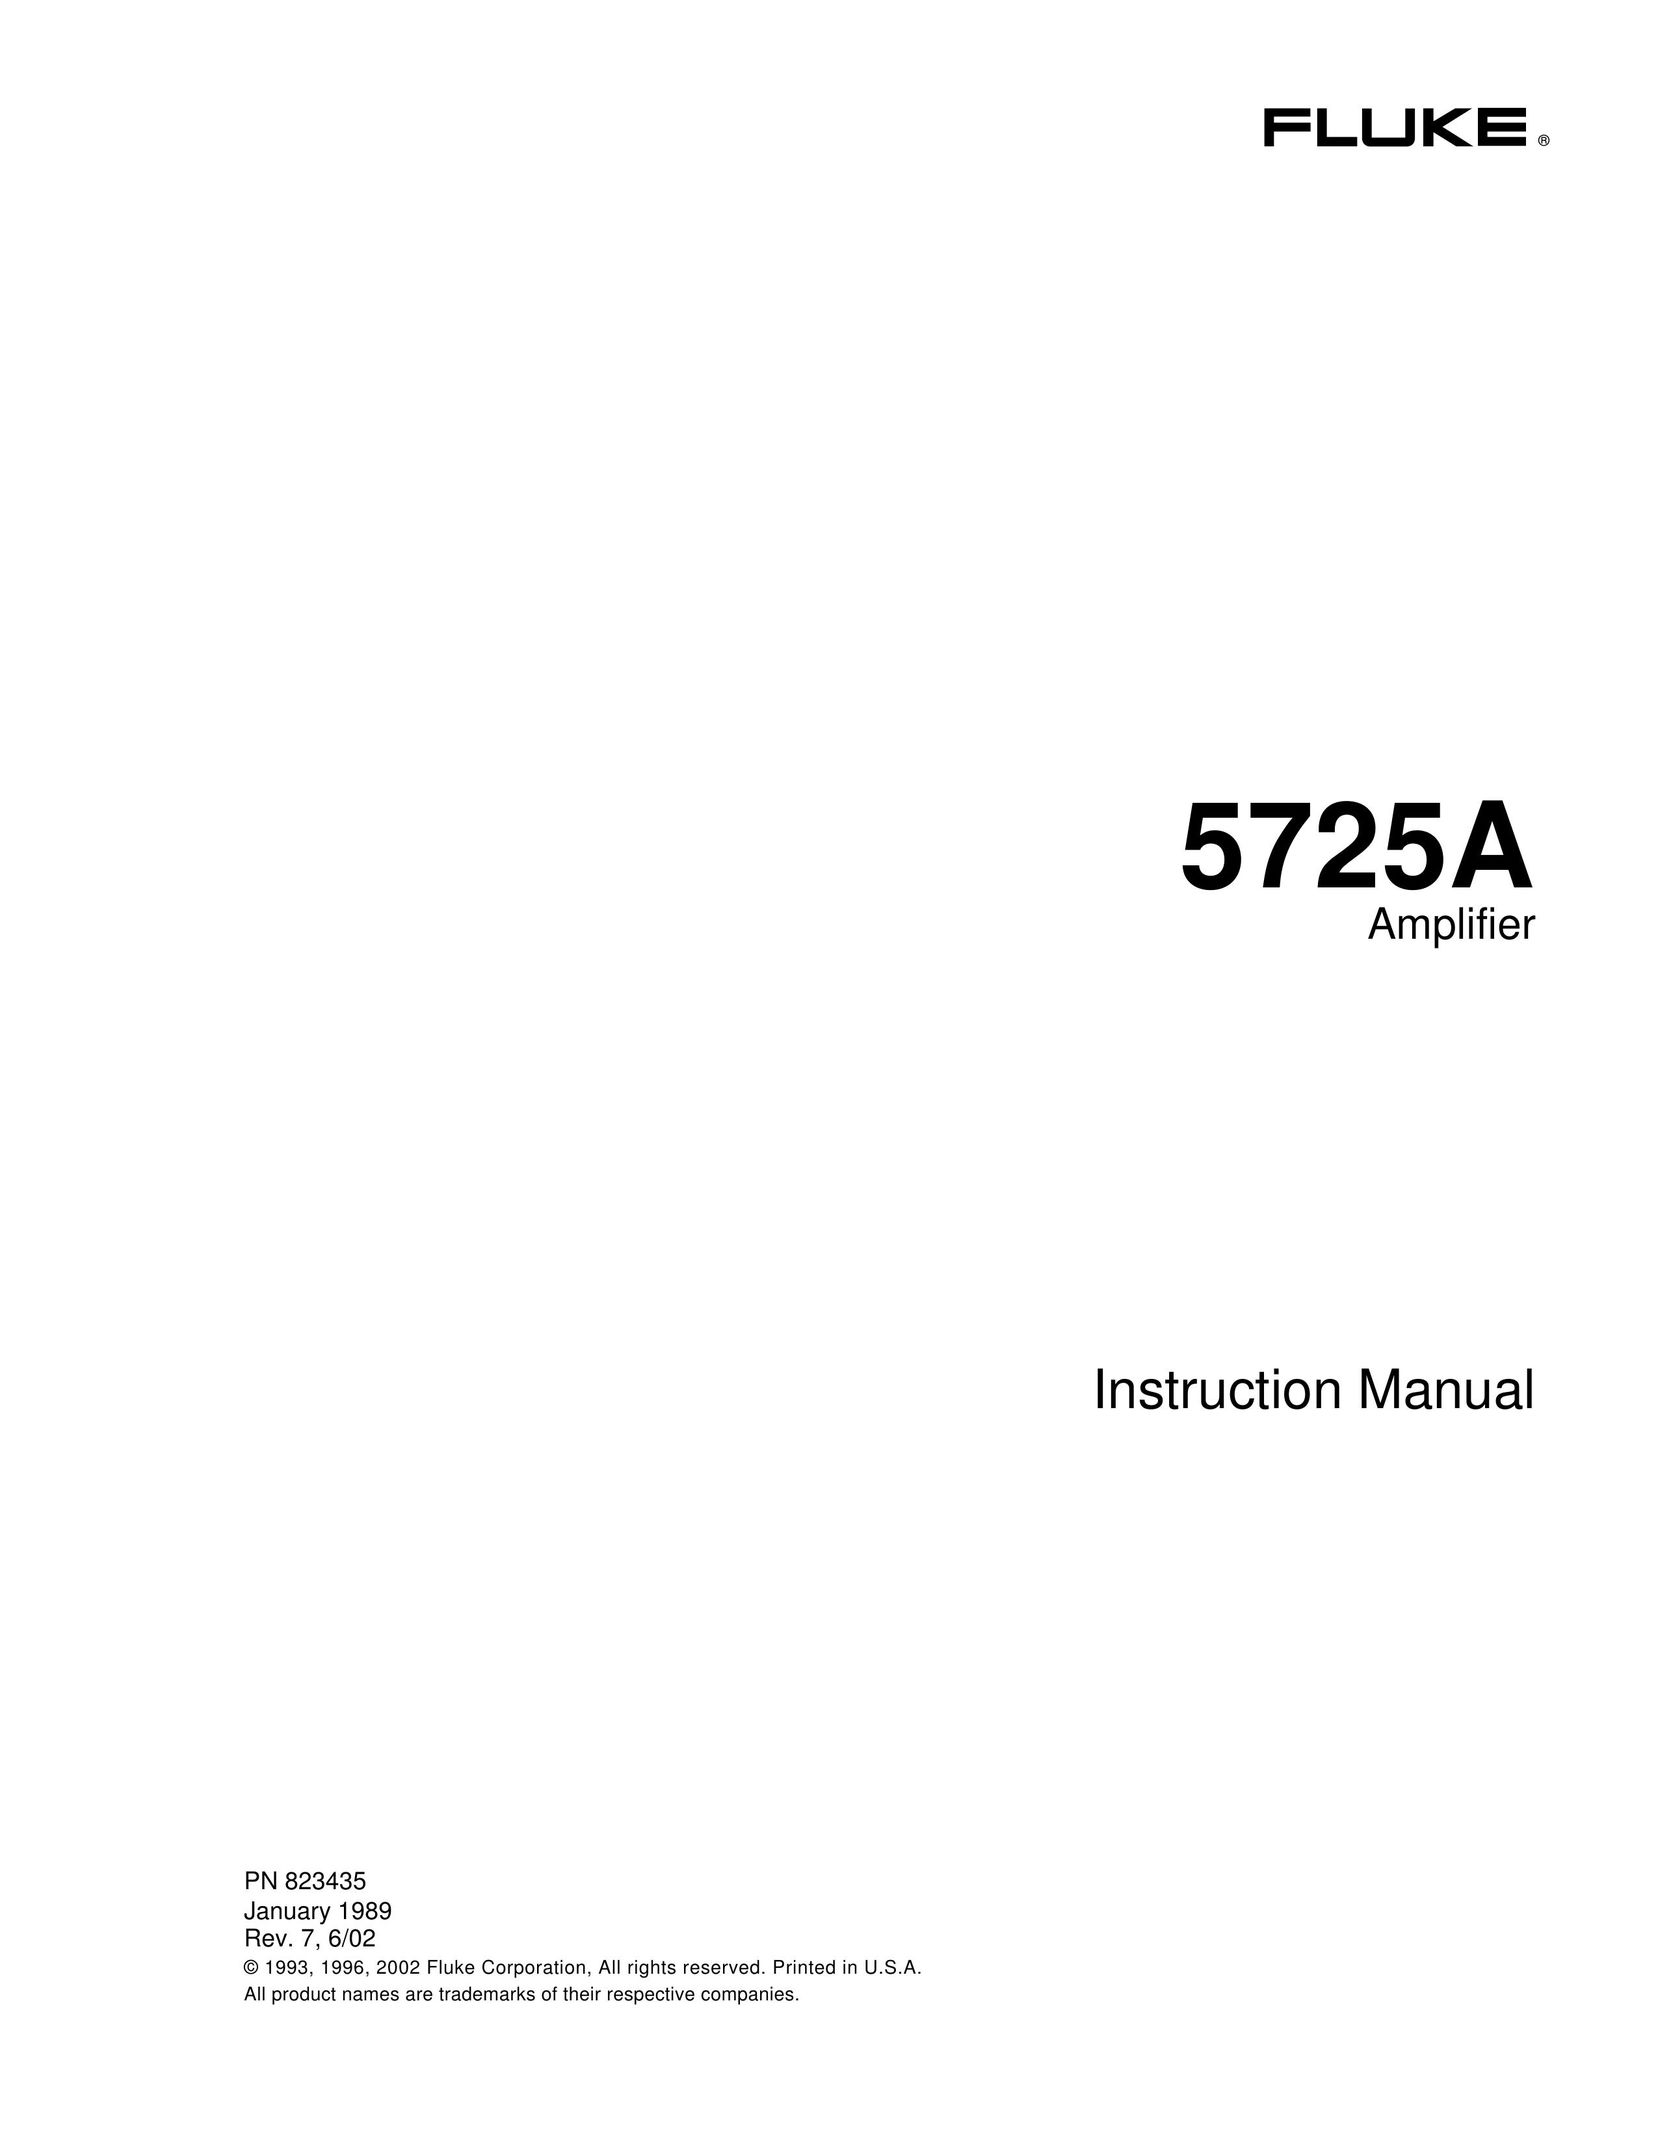 Fluke 5725A Stereo Amplifier User Manual